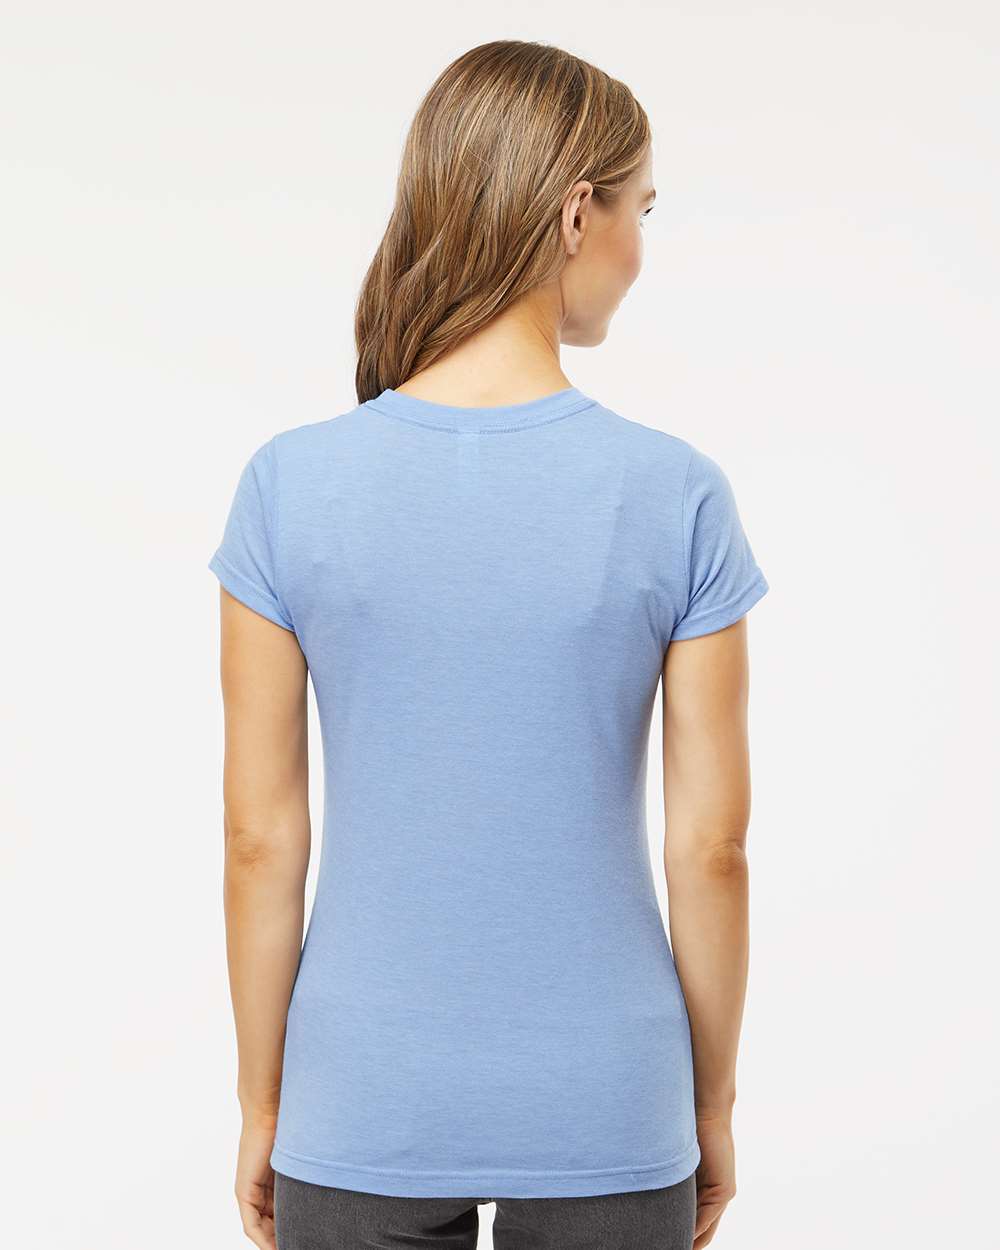 T-Shirt femme Classico personnalisé au dos